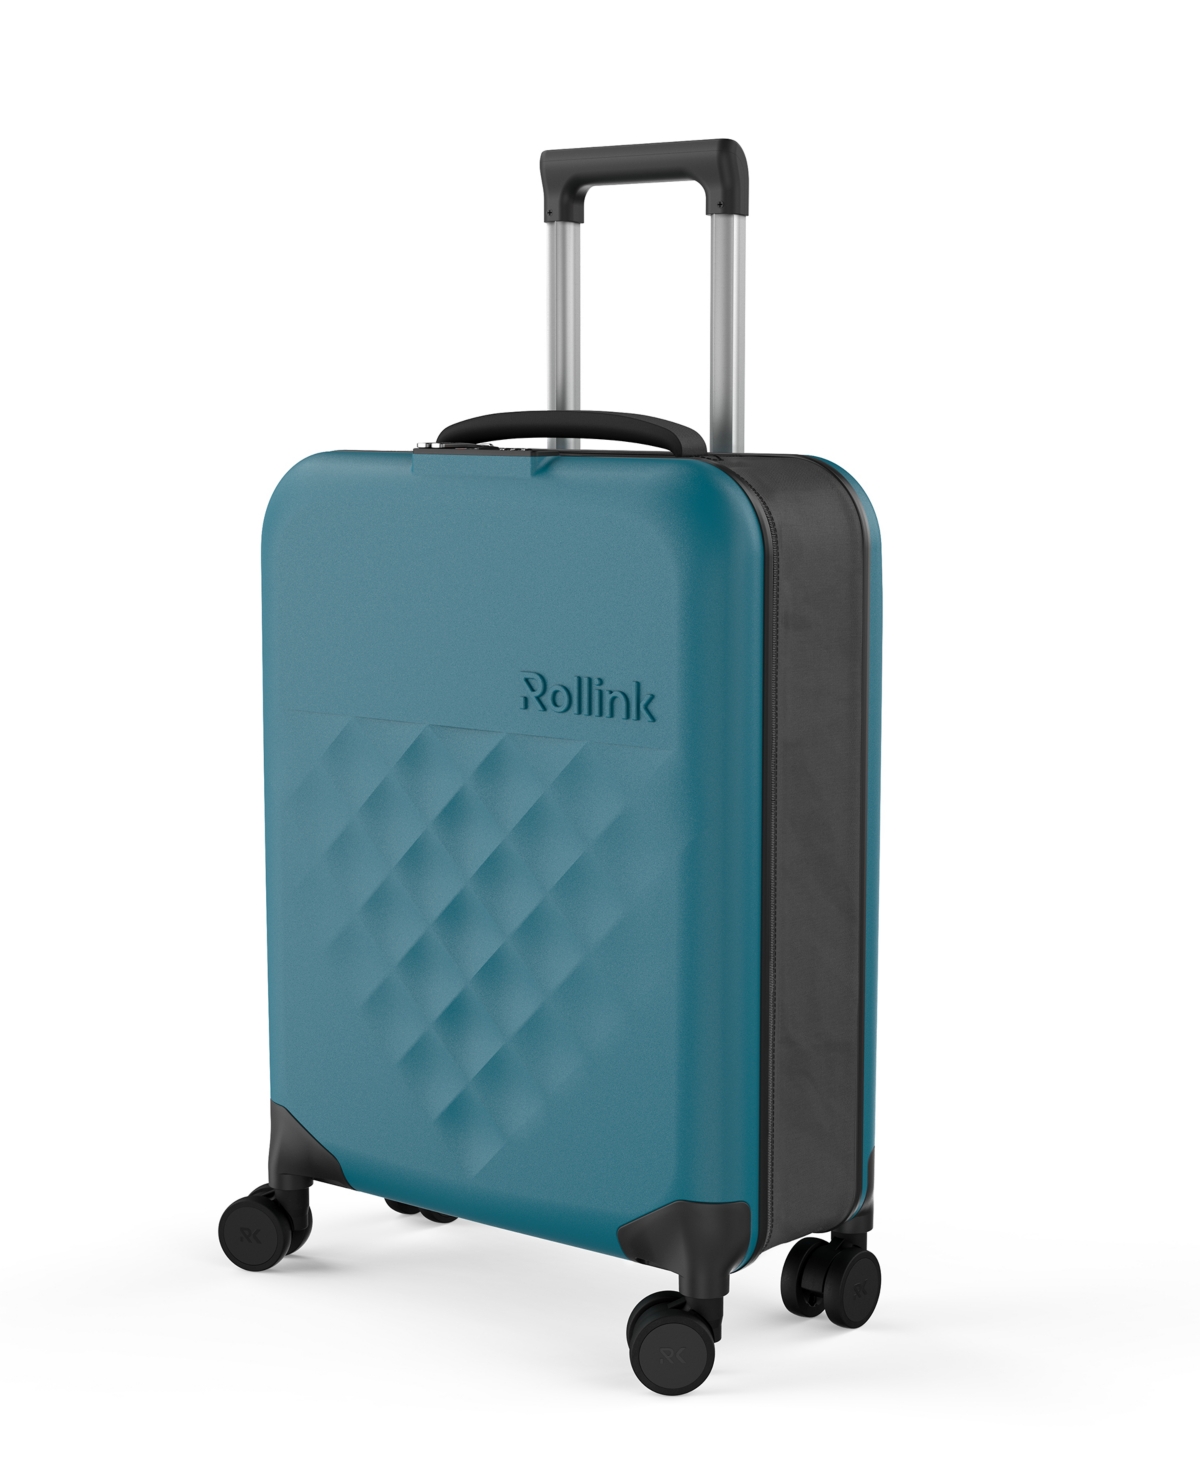 Rollink Flex 360 International 21" Carry-on Spinner Suitcase In Dark Green